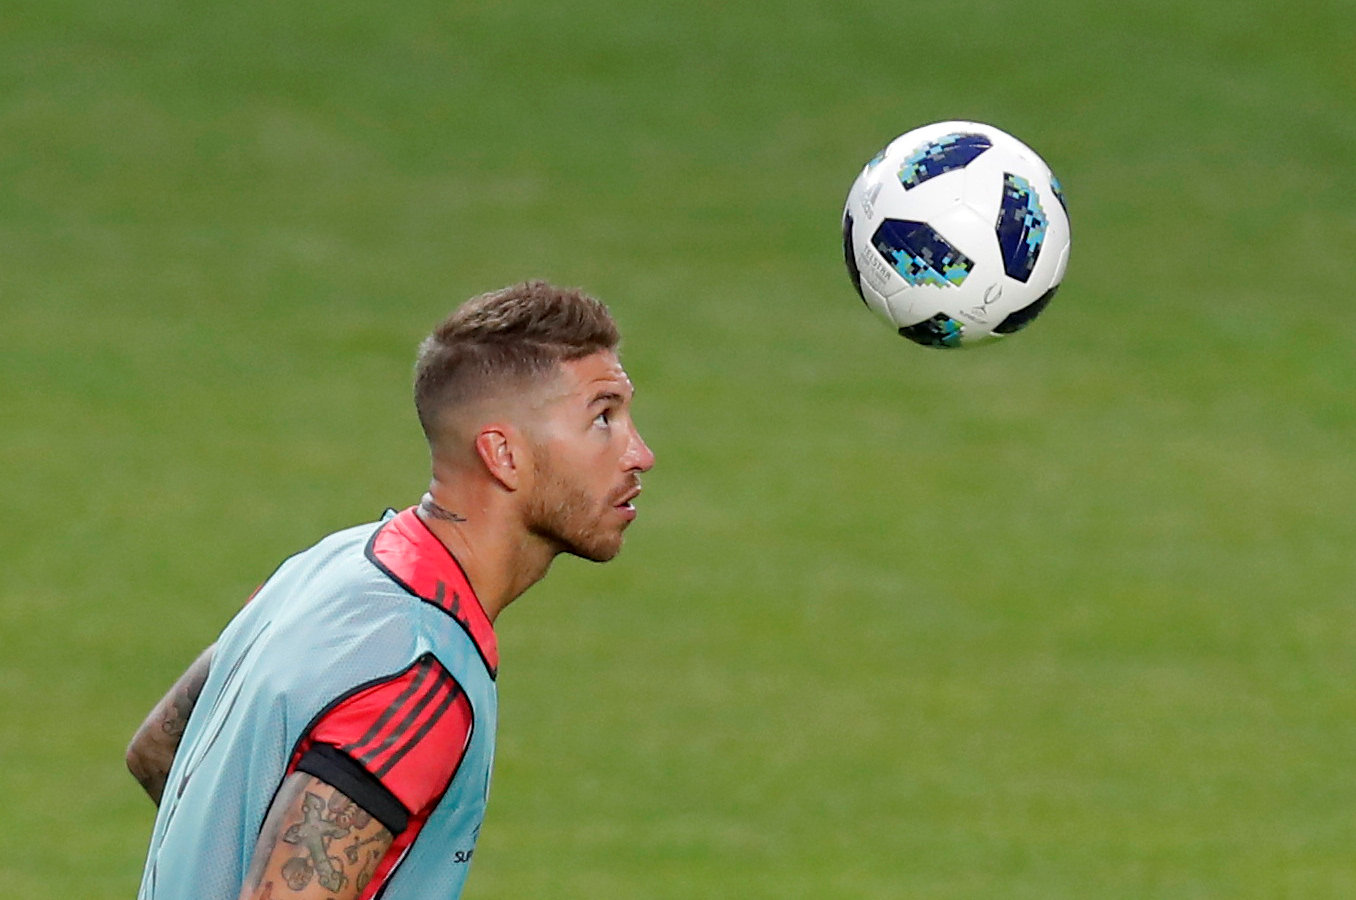 Football: Real skipper Ramos hits back at Klopp over final failures